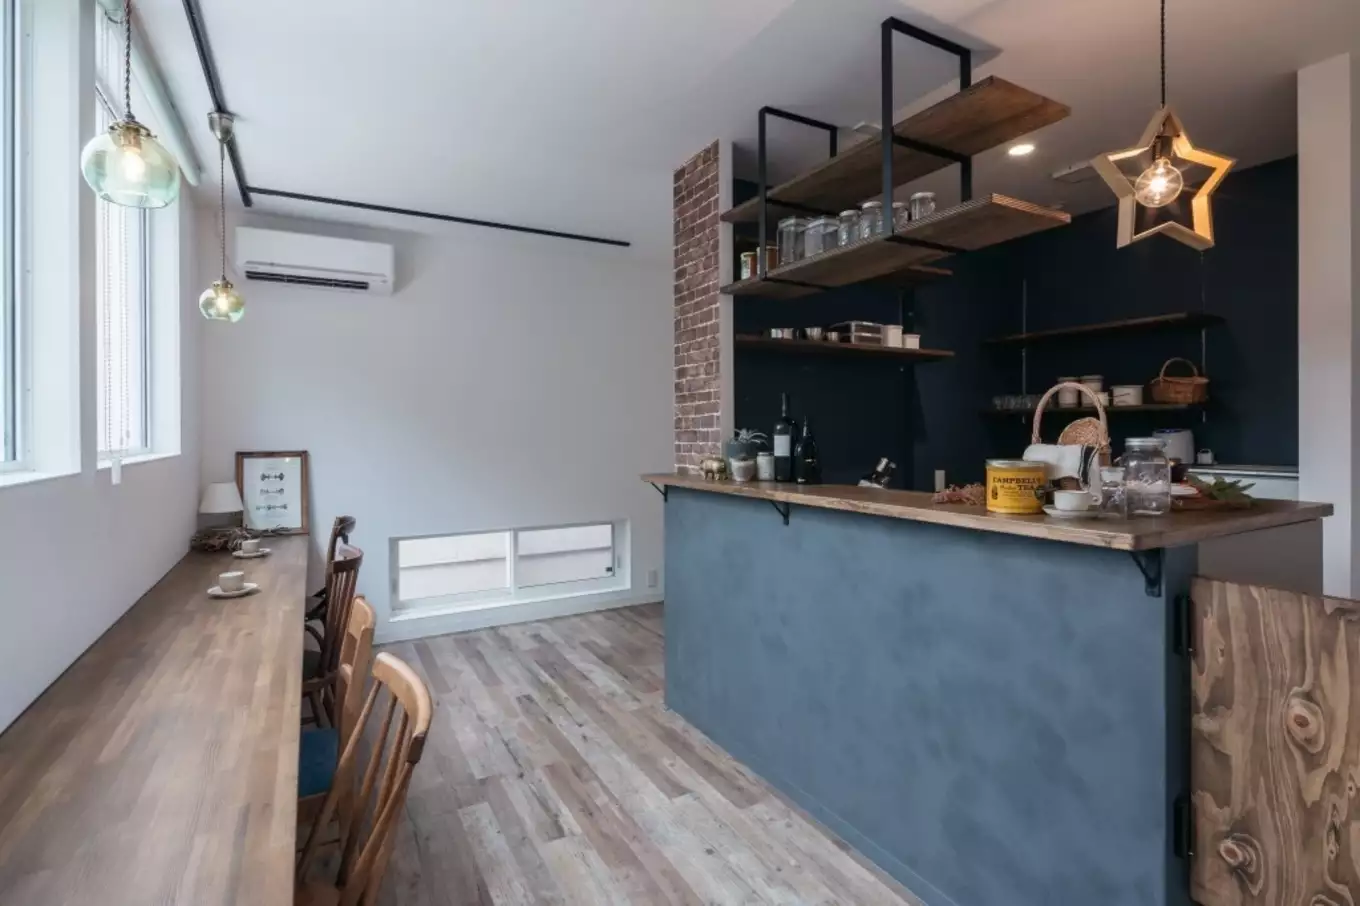 腰壁がグレーのカフェのようなおしゃれな木目調のキッチンと窓際のカウンター